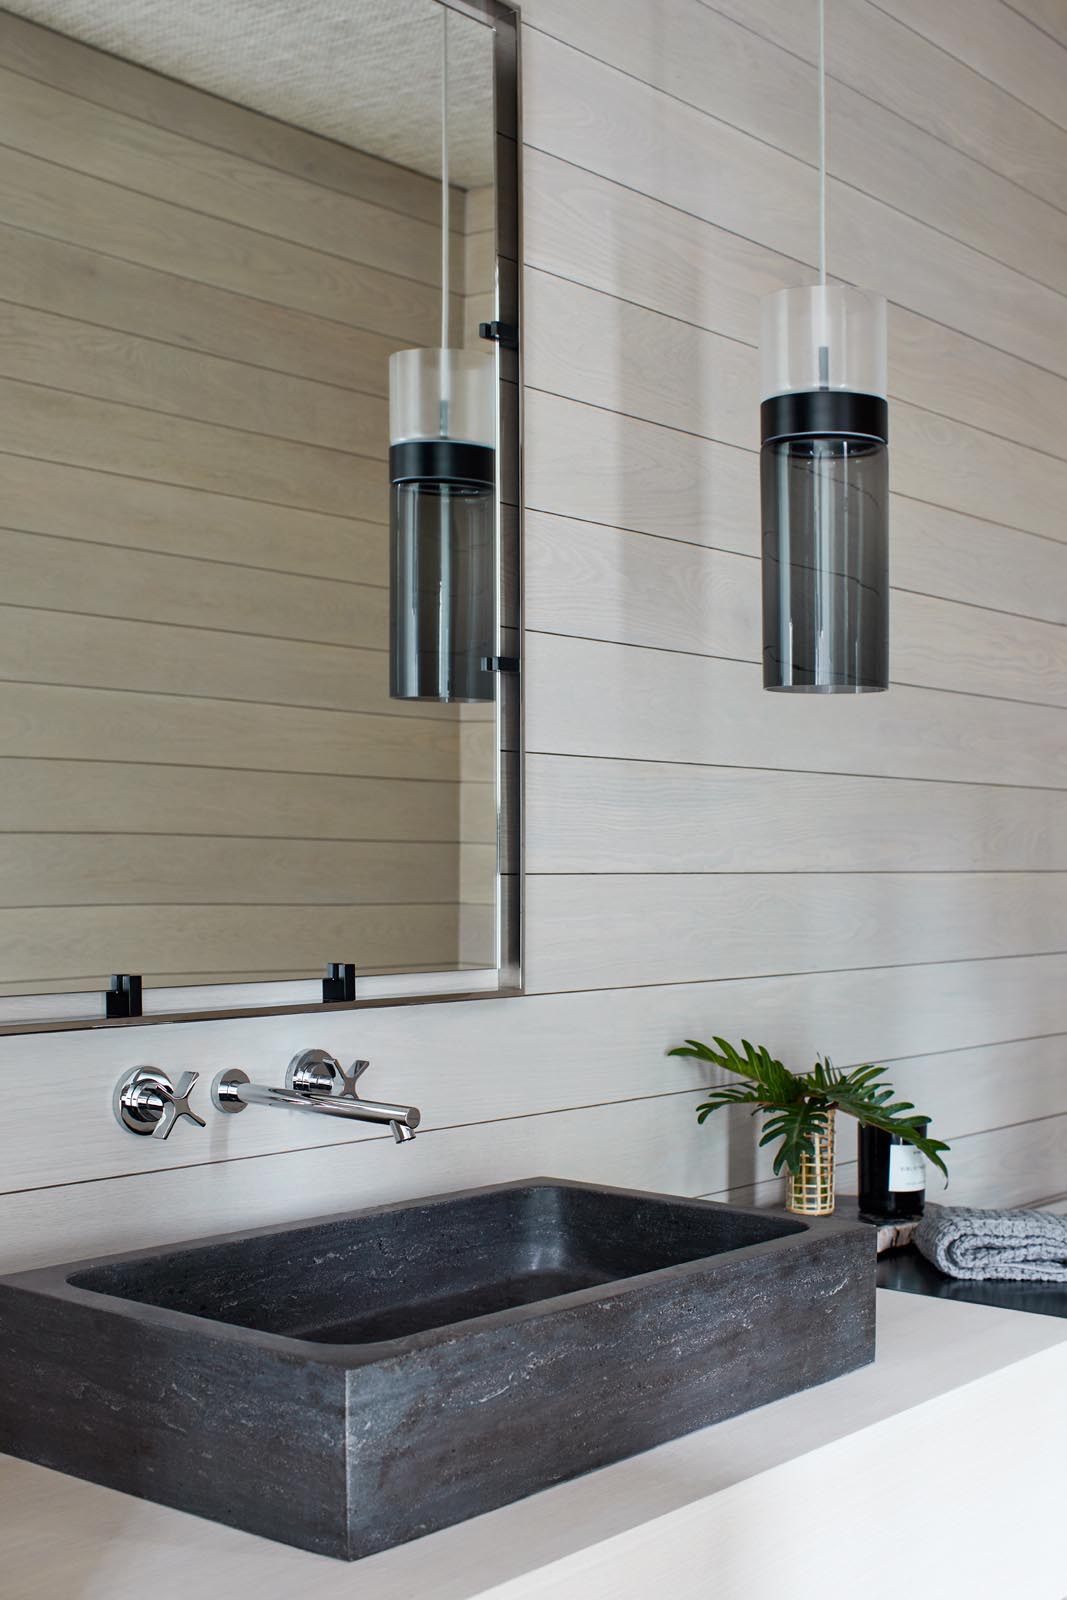 Современная ванная комната со стенами из светлого дерева, контрастирующими с черным подвесным светильником и раковиной.